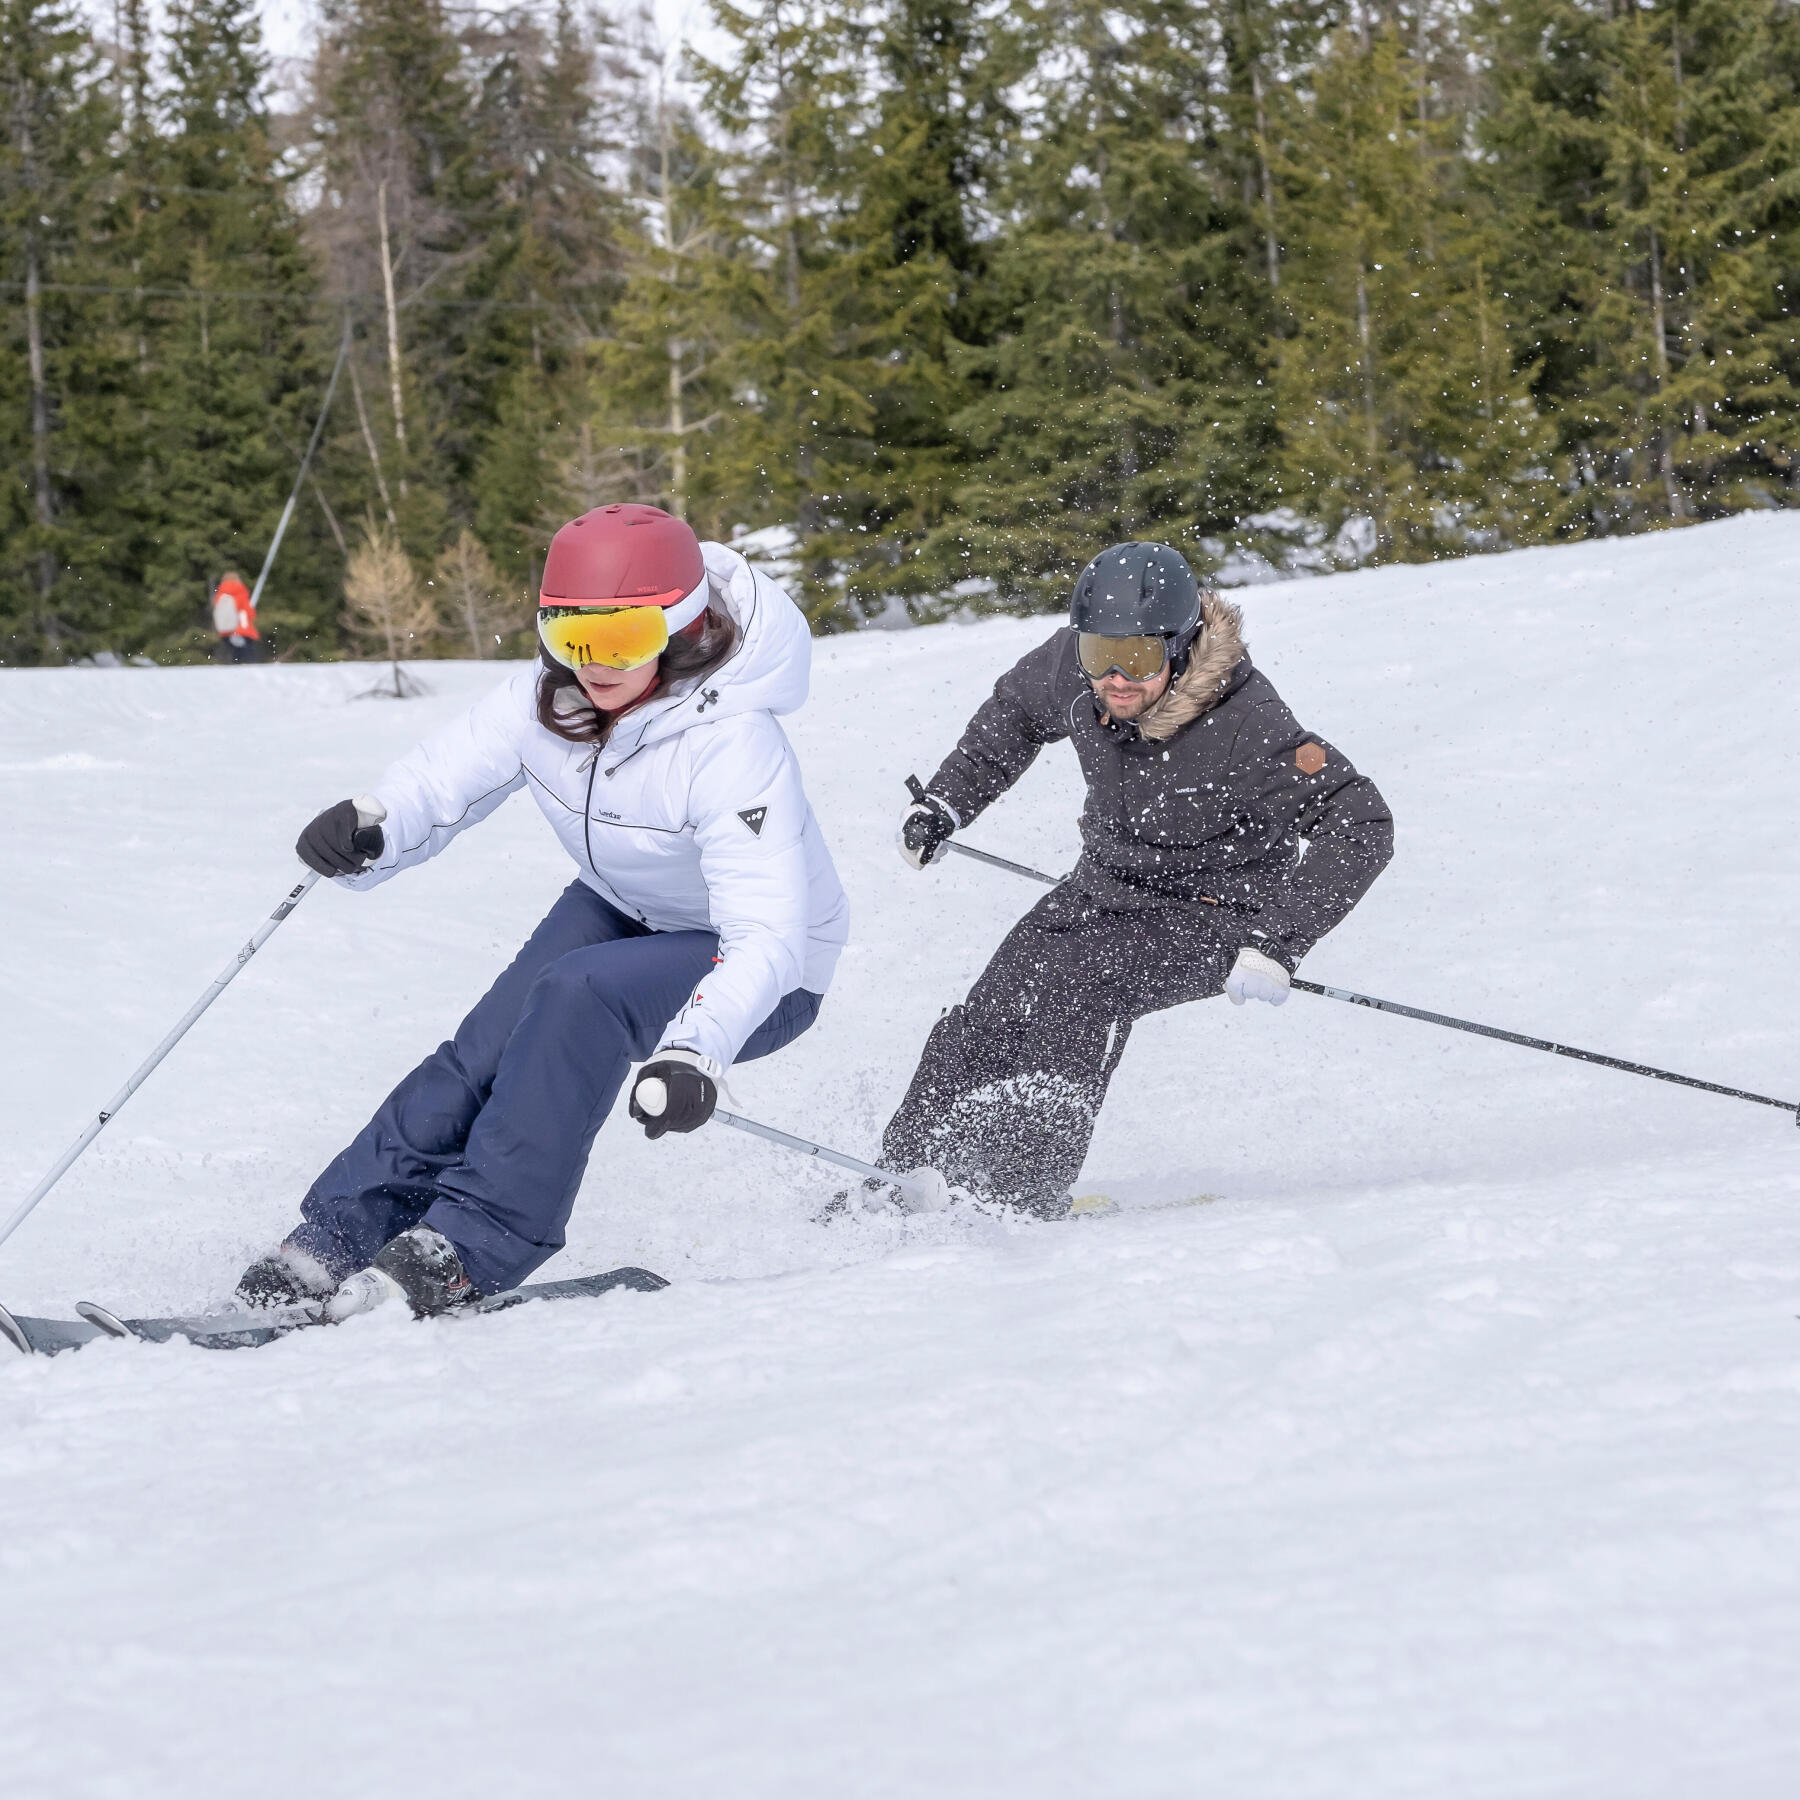 Os benefícios do ski, um desporto para descobrir graças aos conselhos da Decathlon